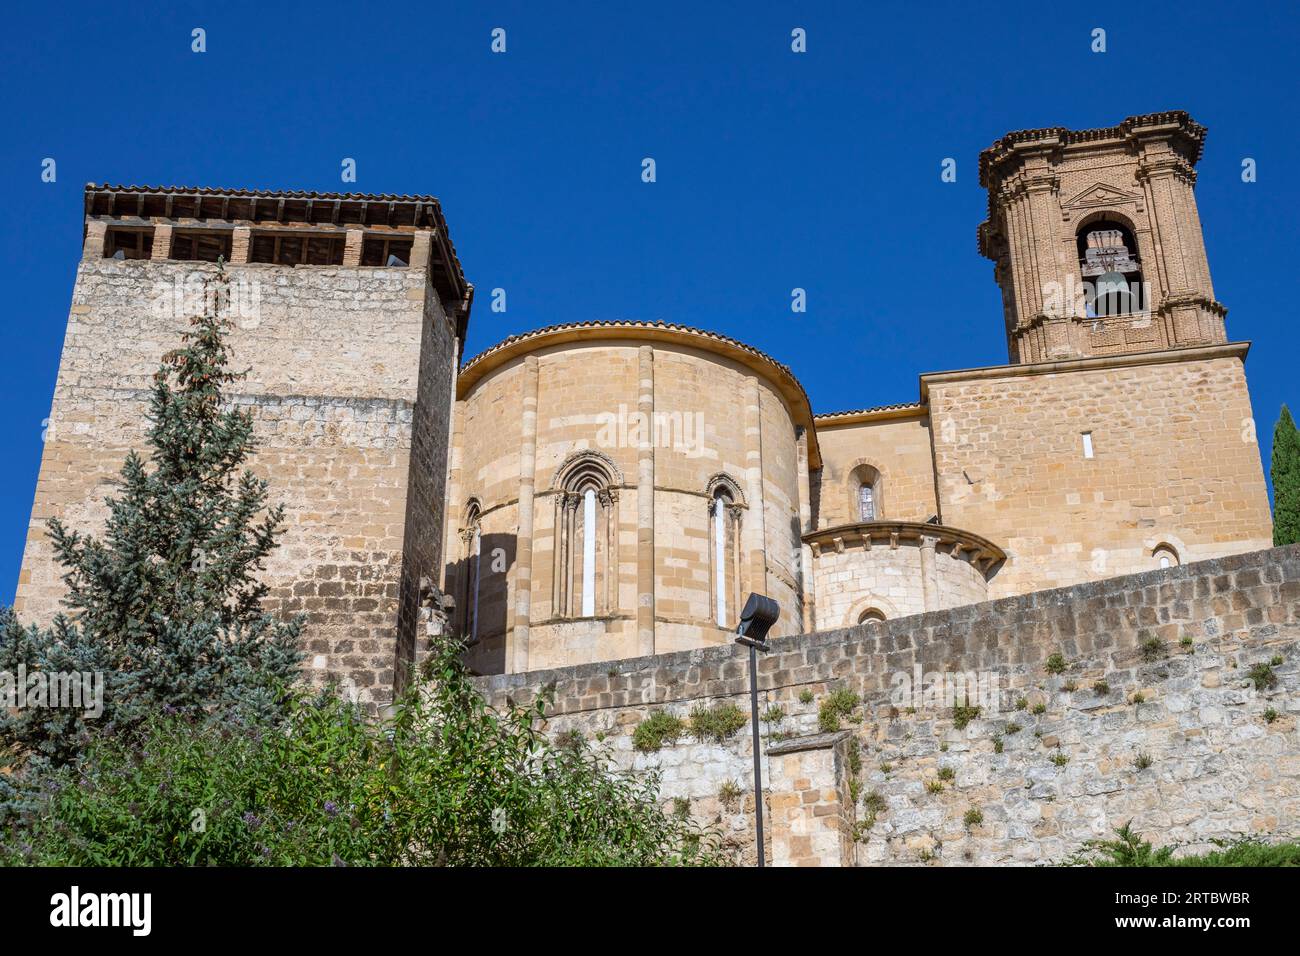 Europa, Spanien, Navarra, Estella-Lizarra, die Kirche St. Michael (Iglesia de San Miguel) mit Steinmauer darunter Stockfoto